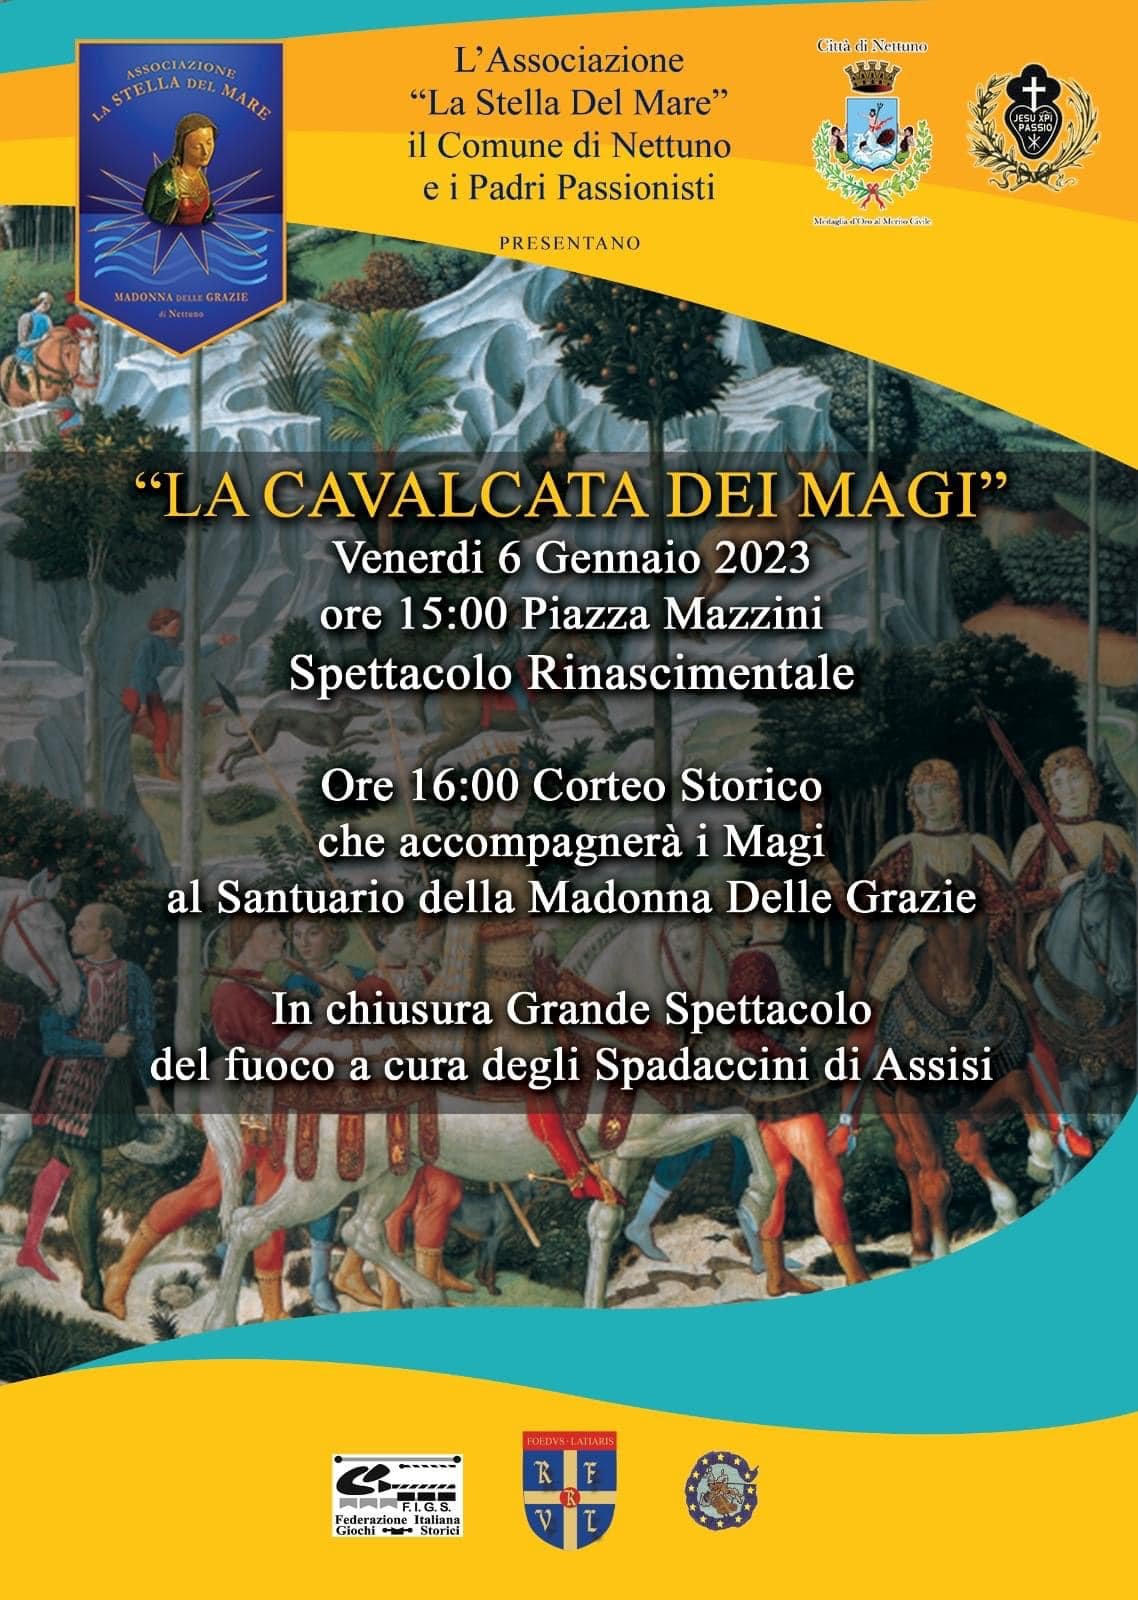 domani-alle-15-a-nettuno-la-cavalcata-dei-magi-da-piazza-mazzini-al-santuario